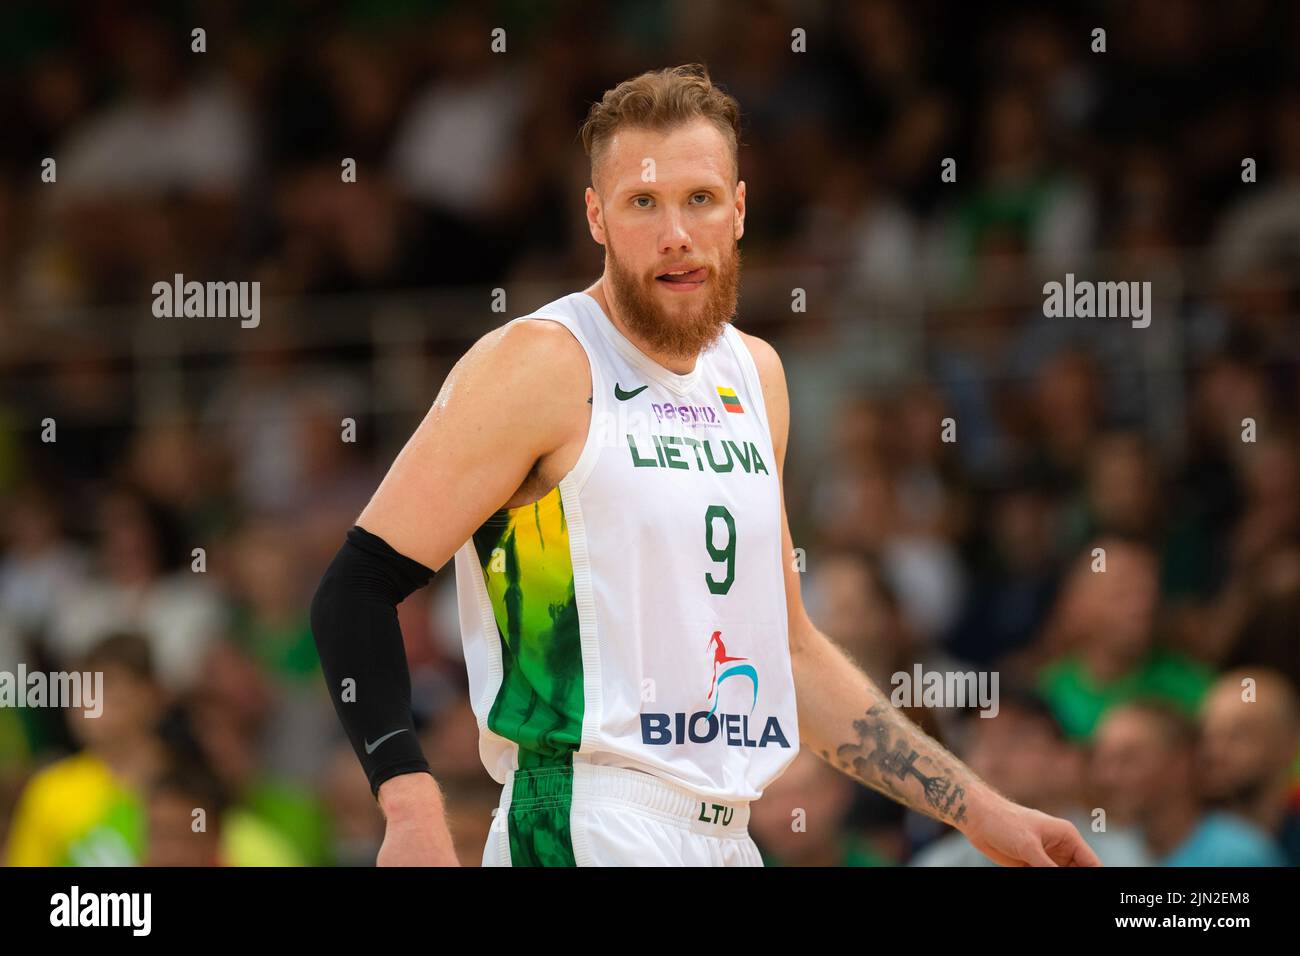 2022 08 07. Basket. Lituania - Estonia - 90:88. Ignas Brazdeikis è un giocatore di basket lituano-canadese che gioca come un winger leggero. Foto Stock